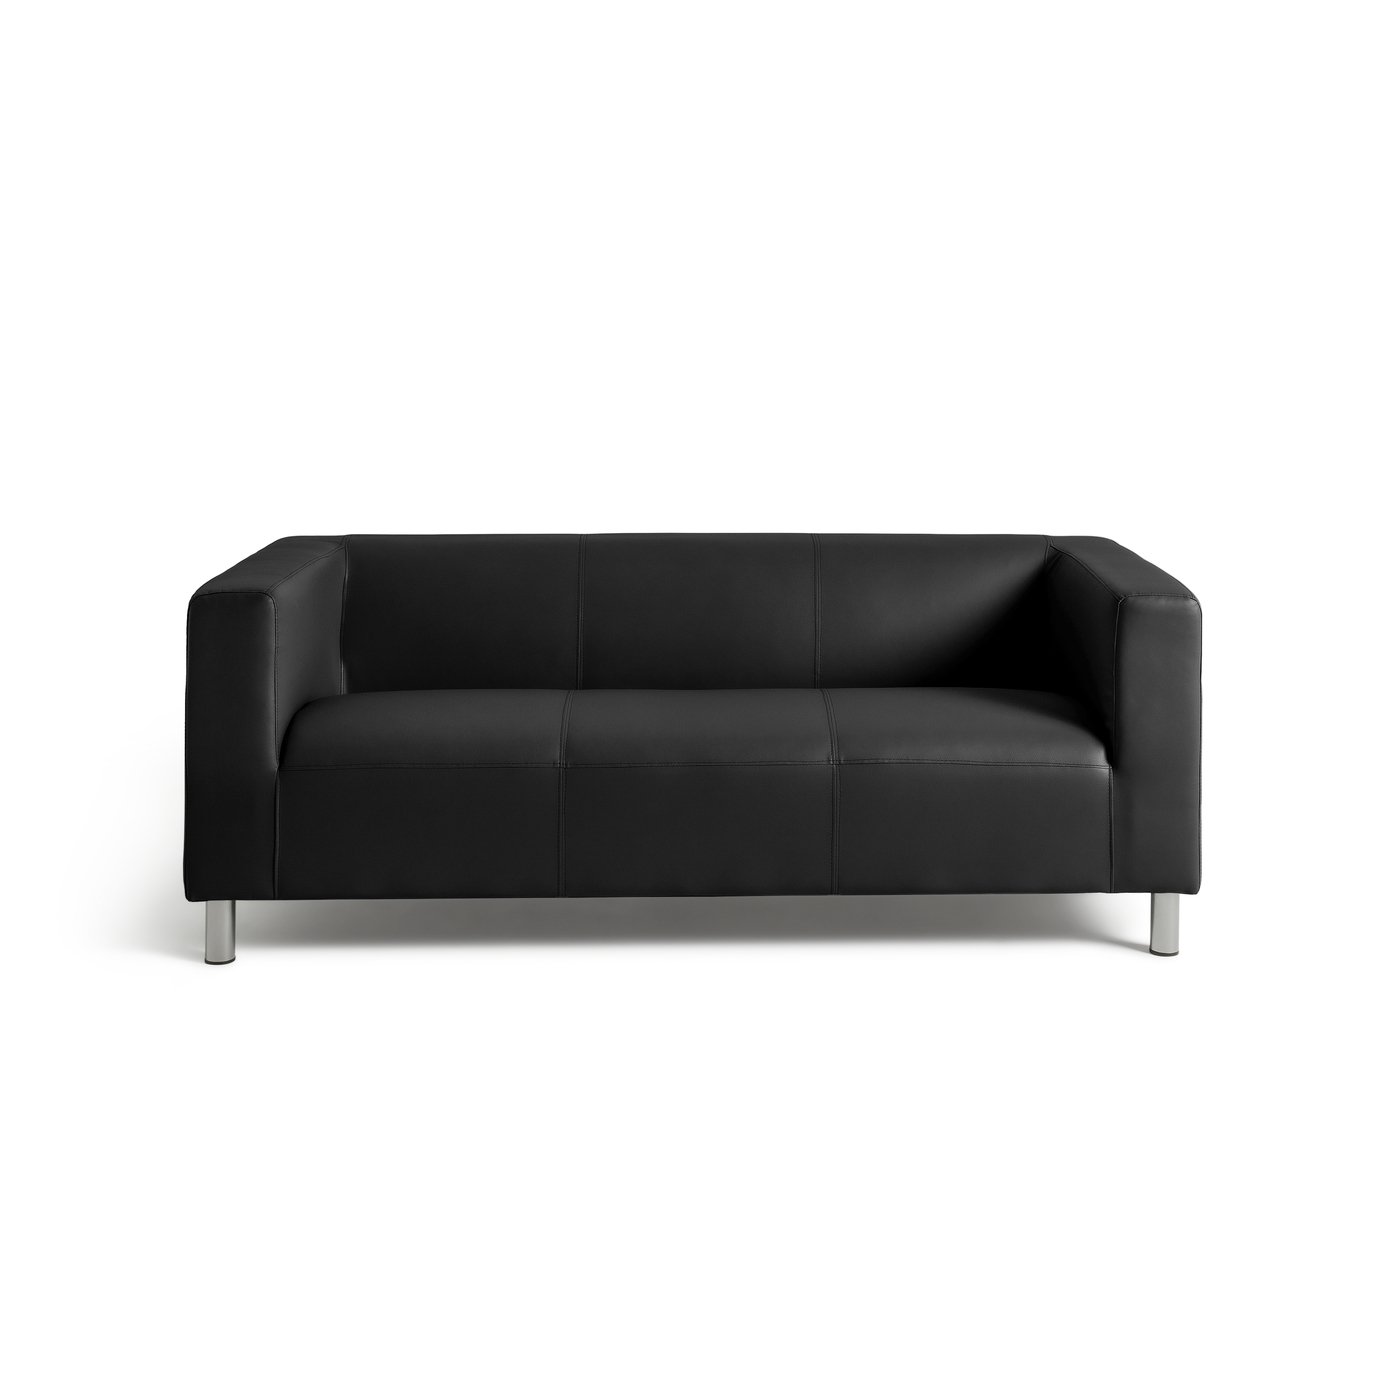 Argos Home Moda 3 Seater Faux Leather Sofa - Black